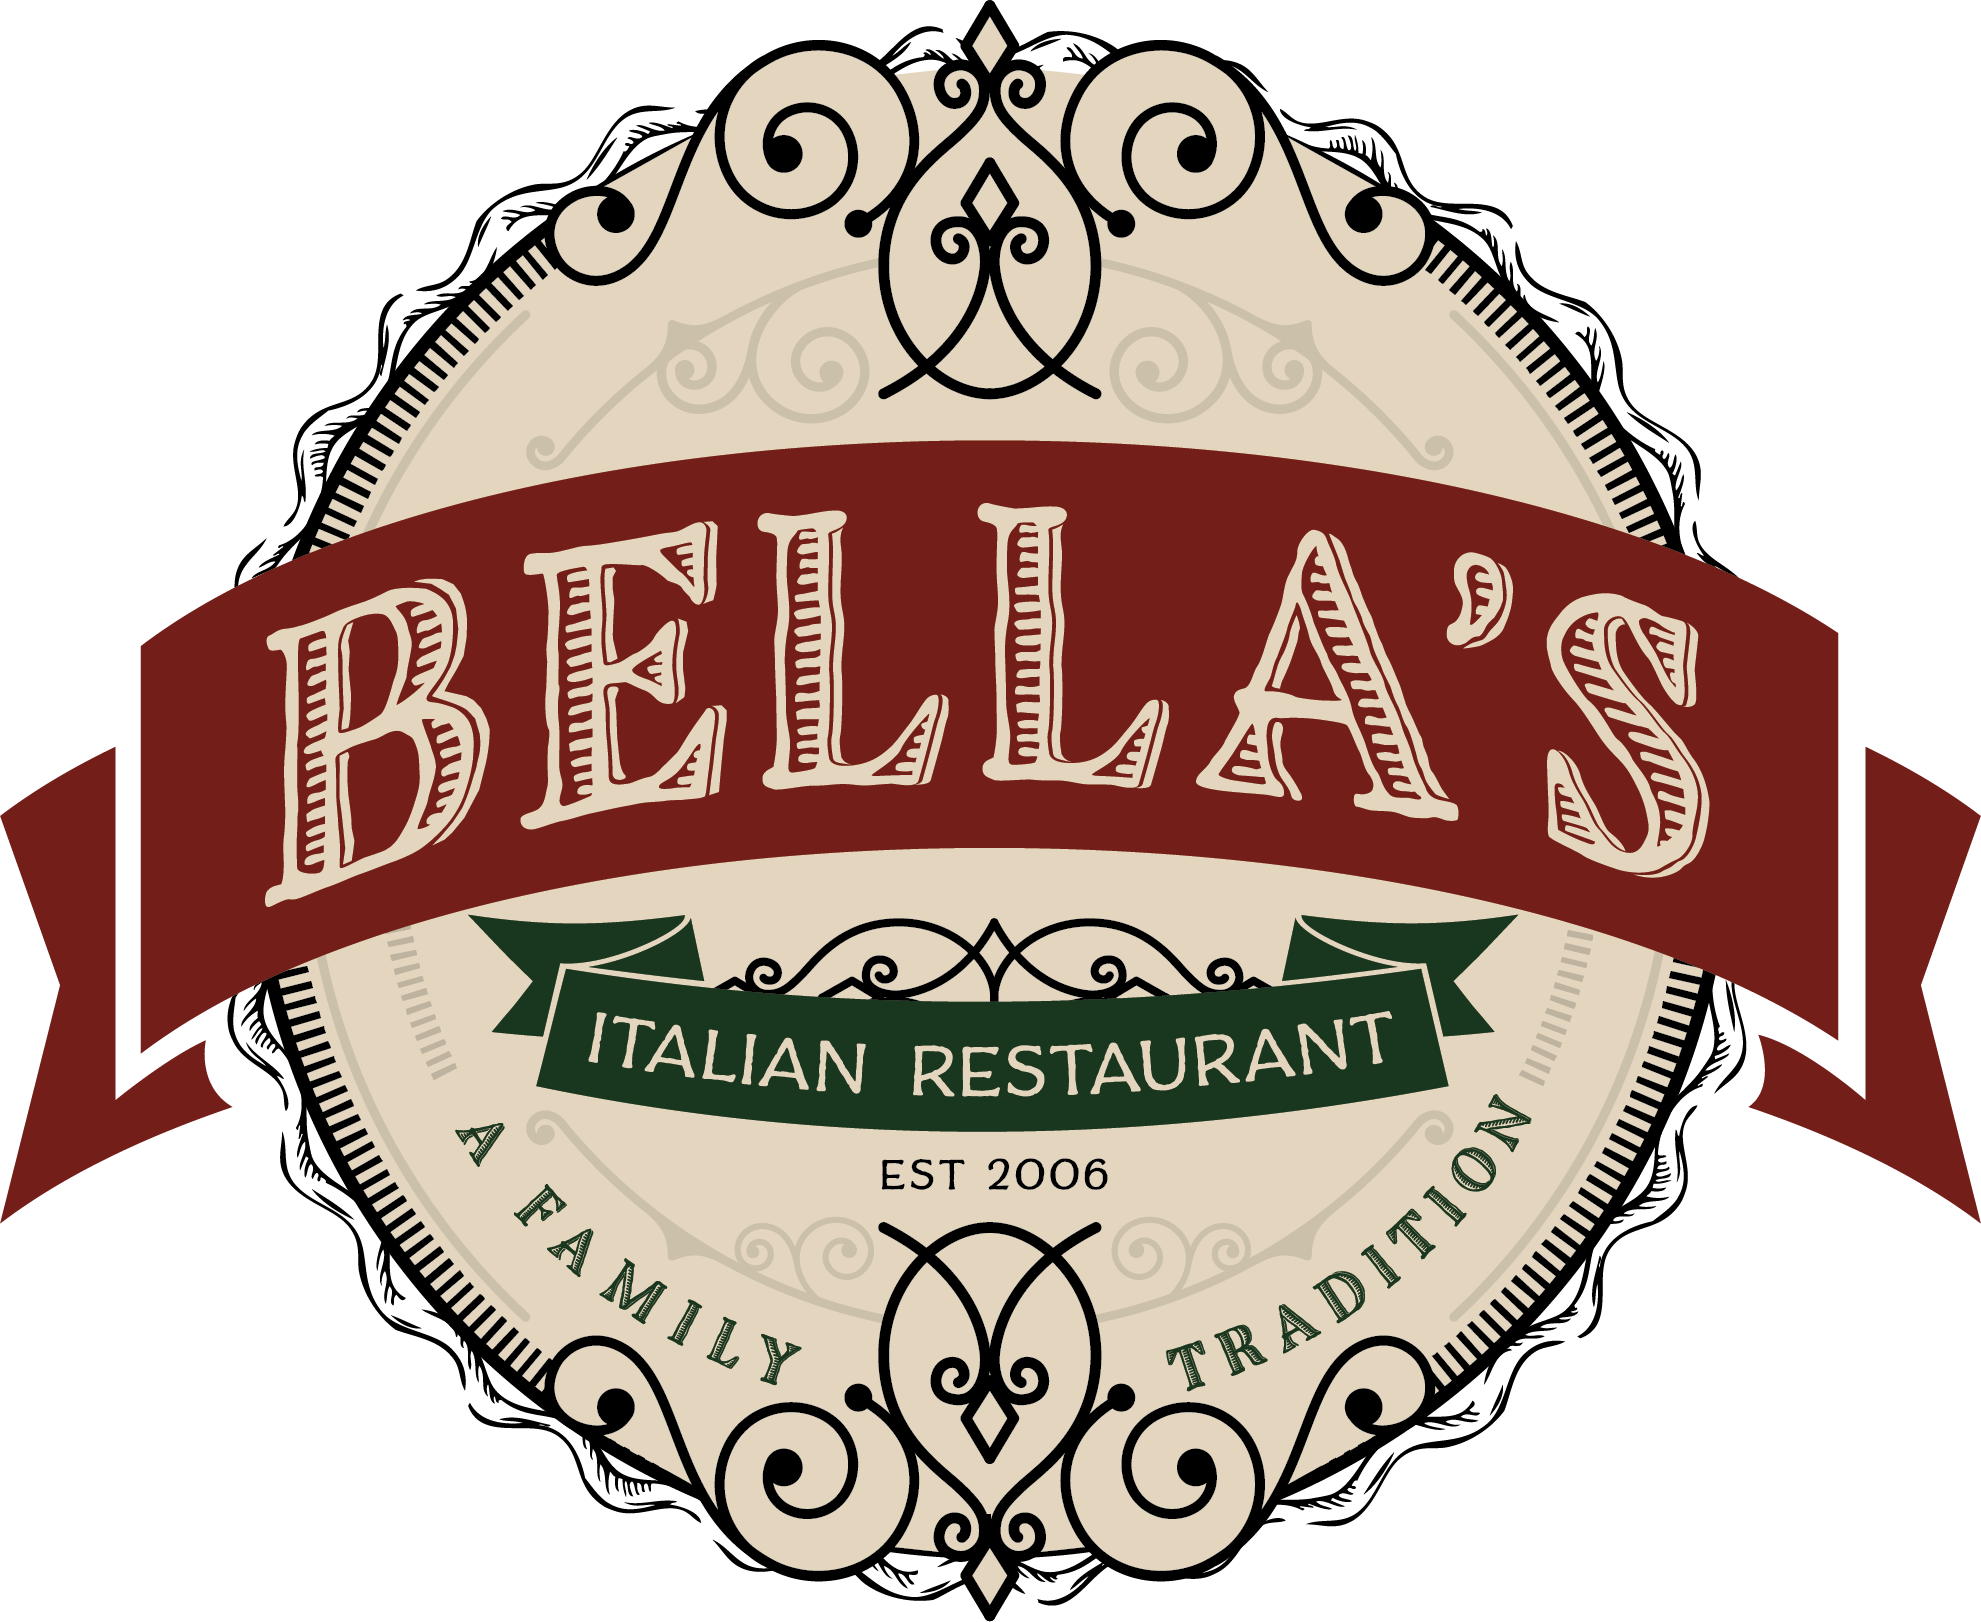 Bella's Pizza and Pasta Neighborhood Italian Restaurant In Banner Elk NC